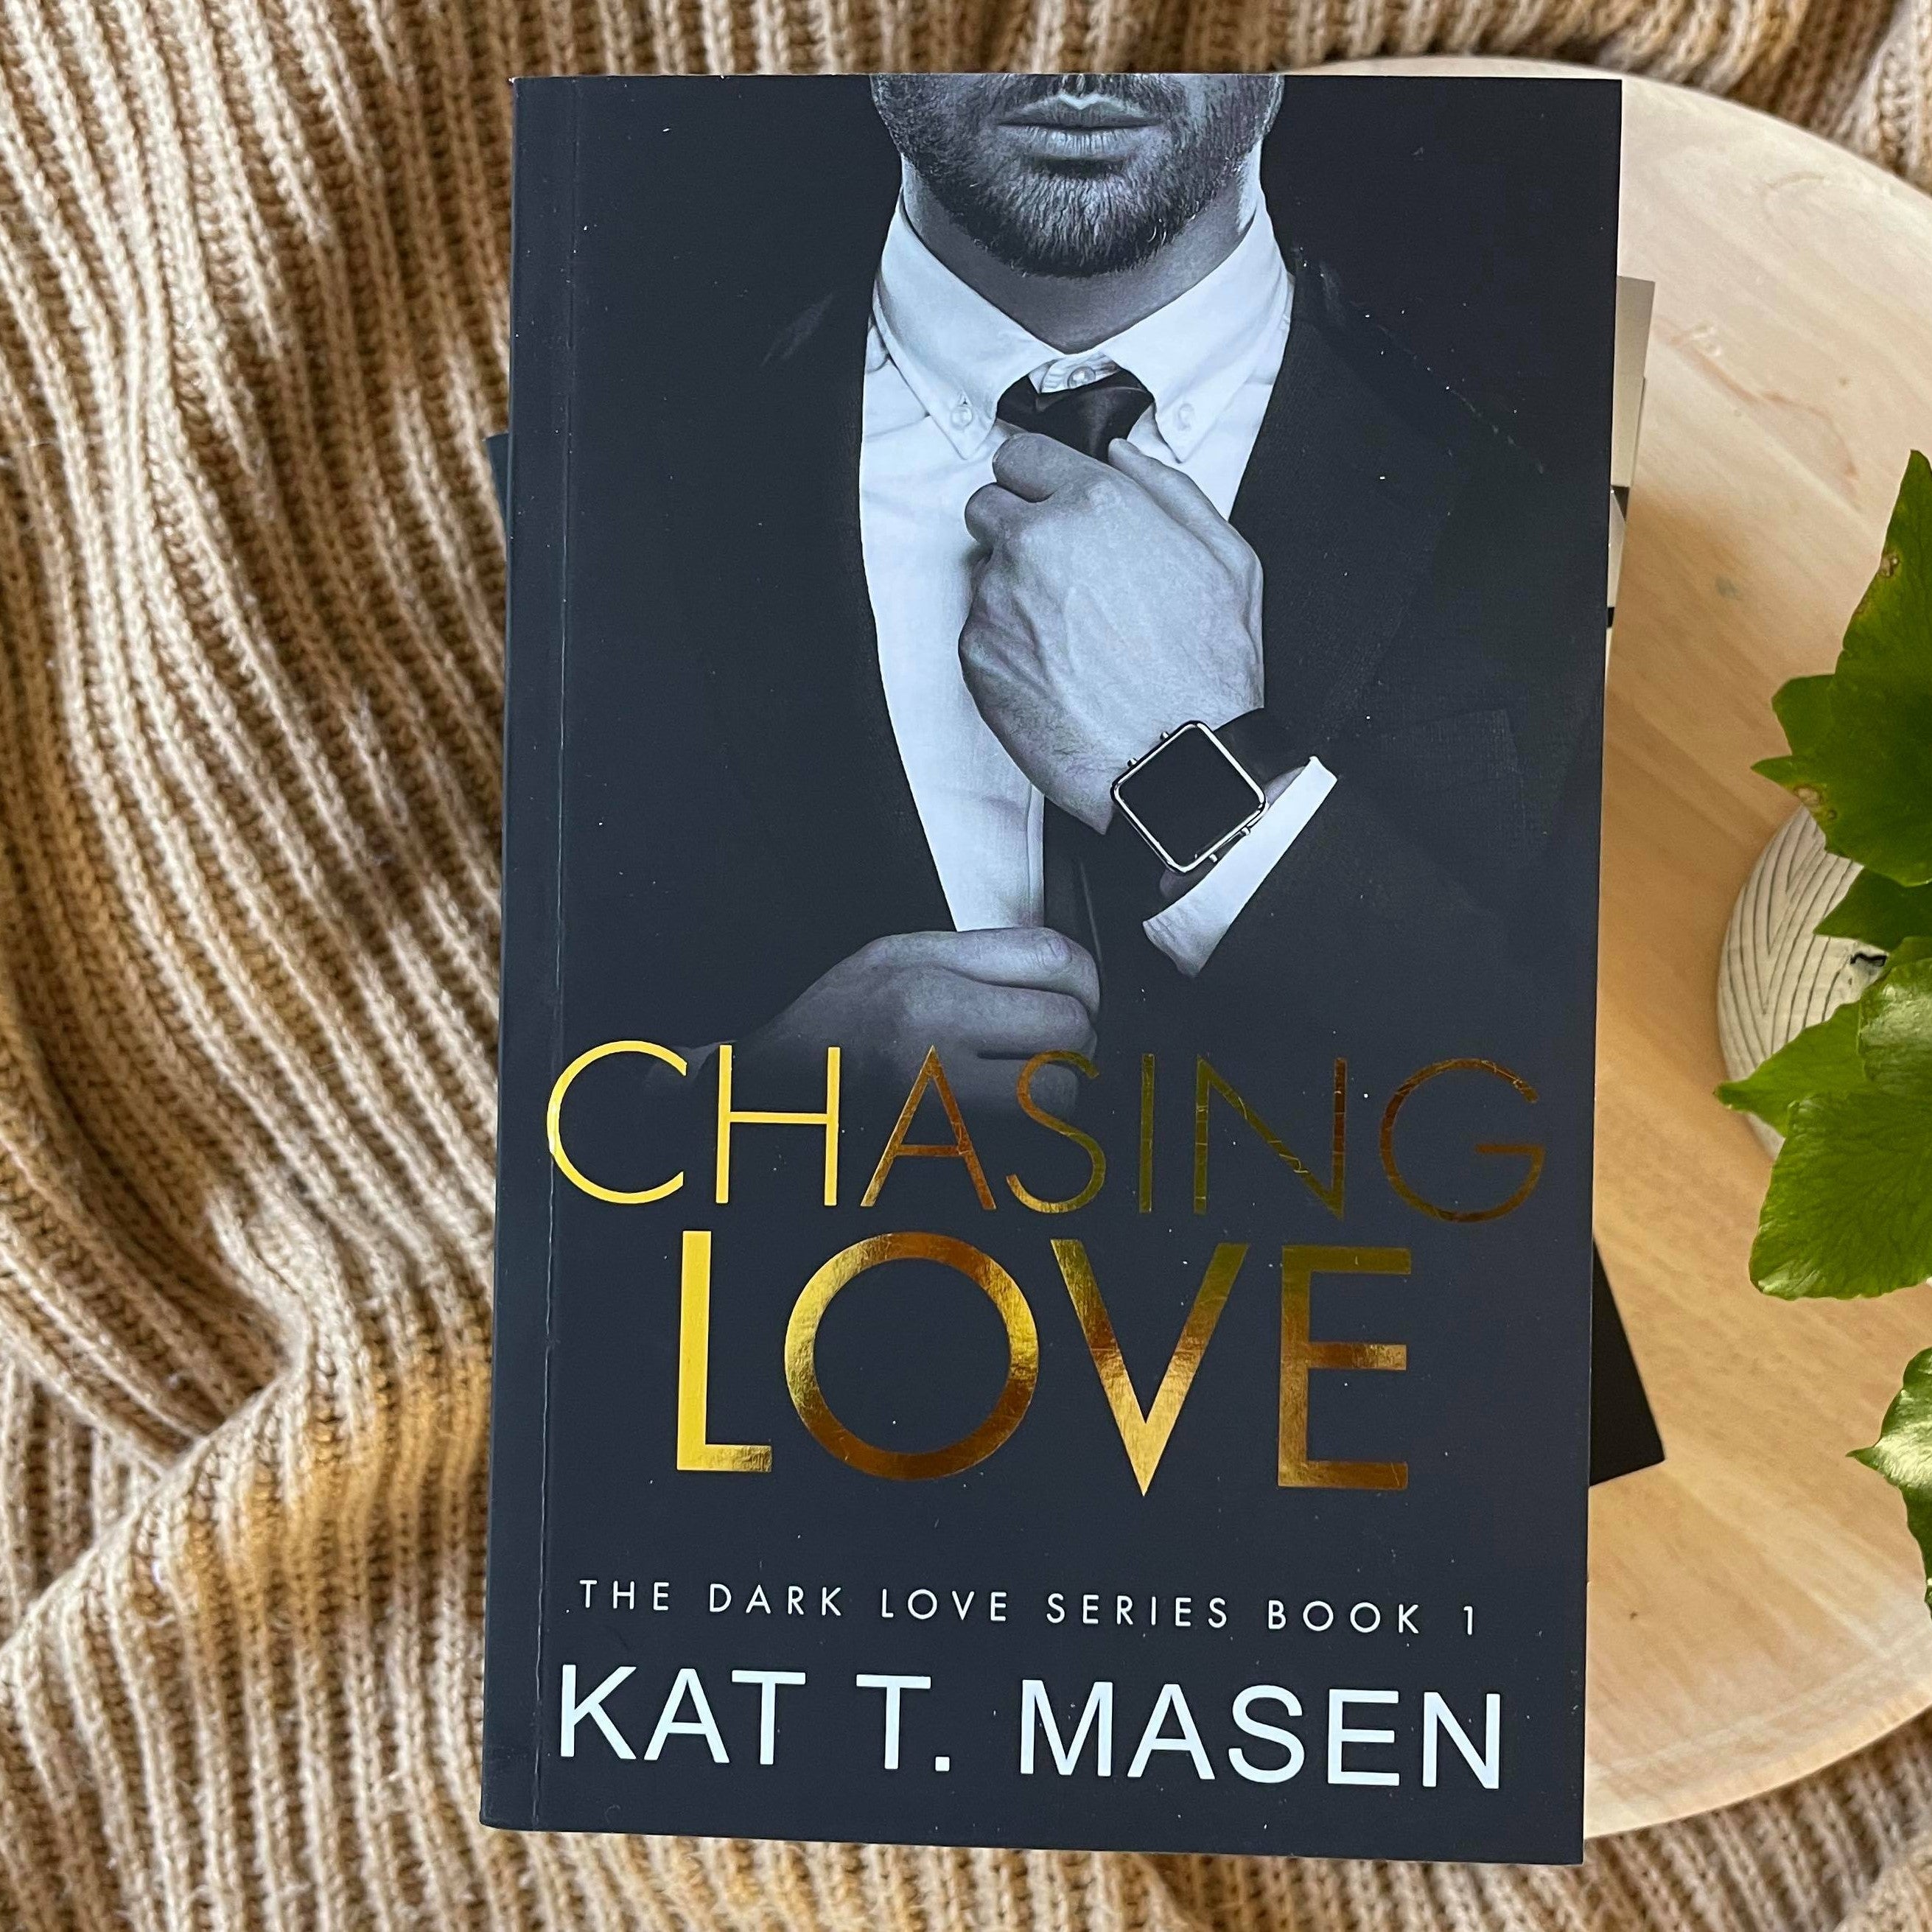 Dark Love Series by Kat T. Masen